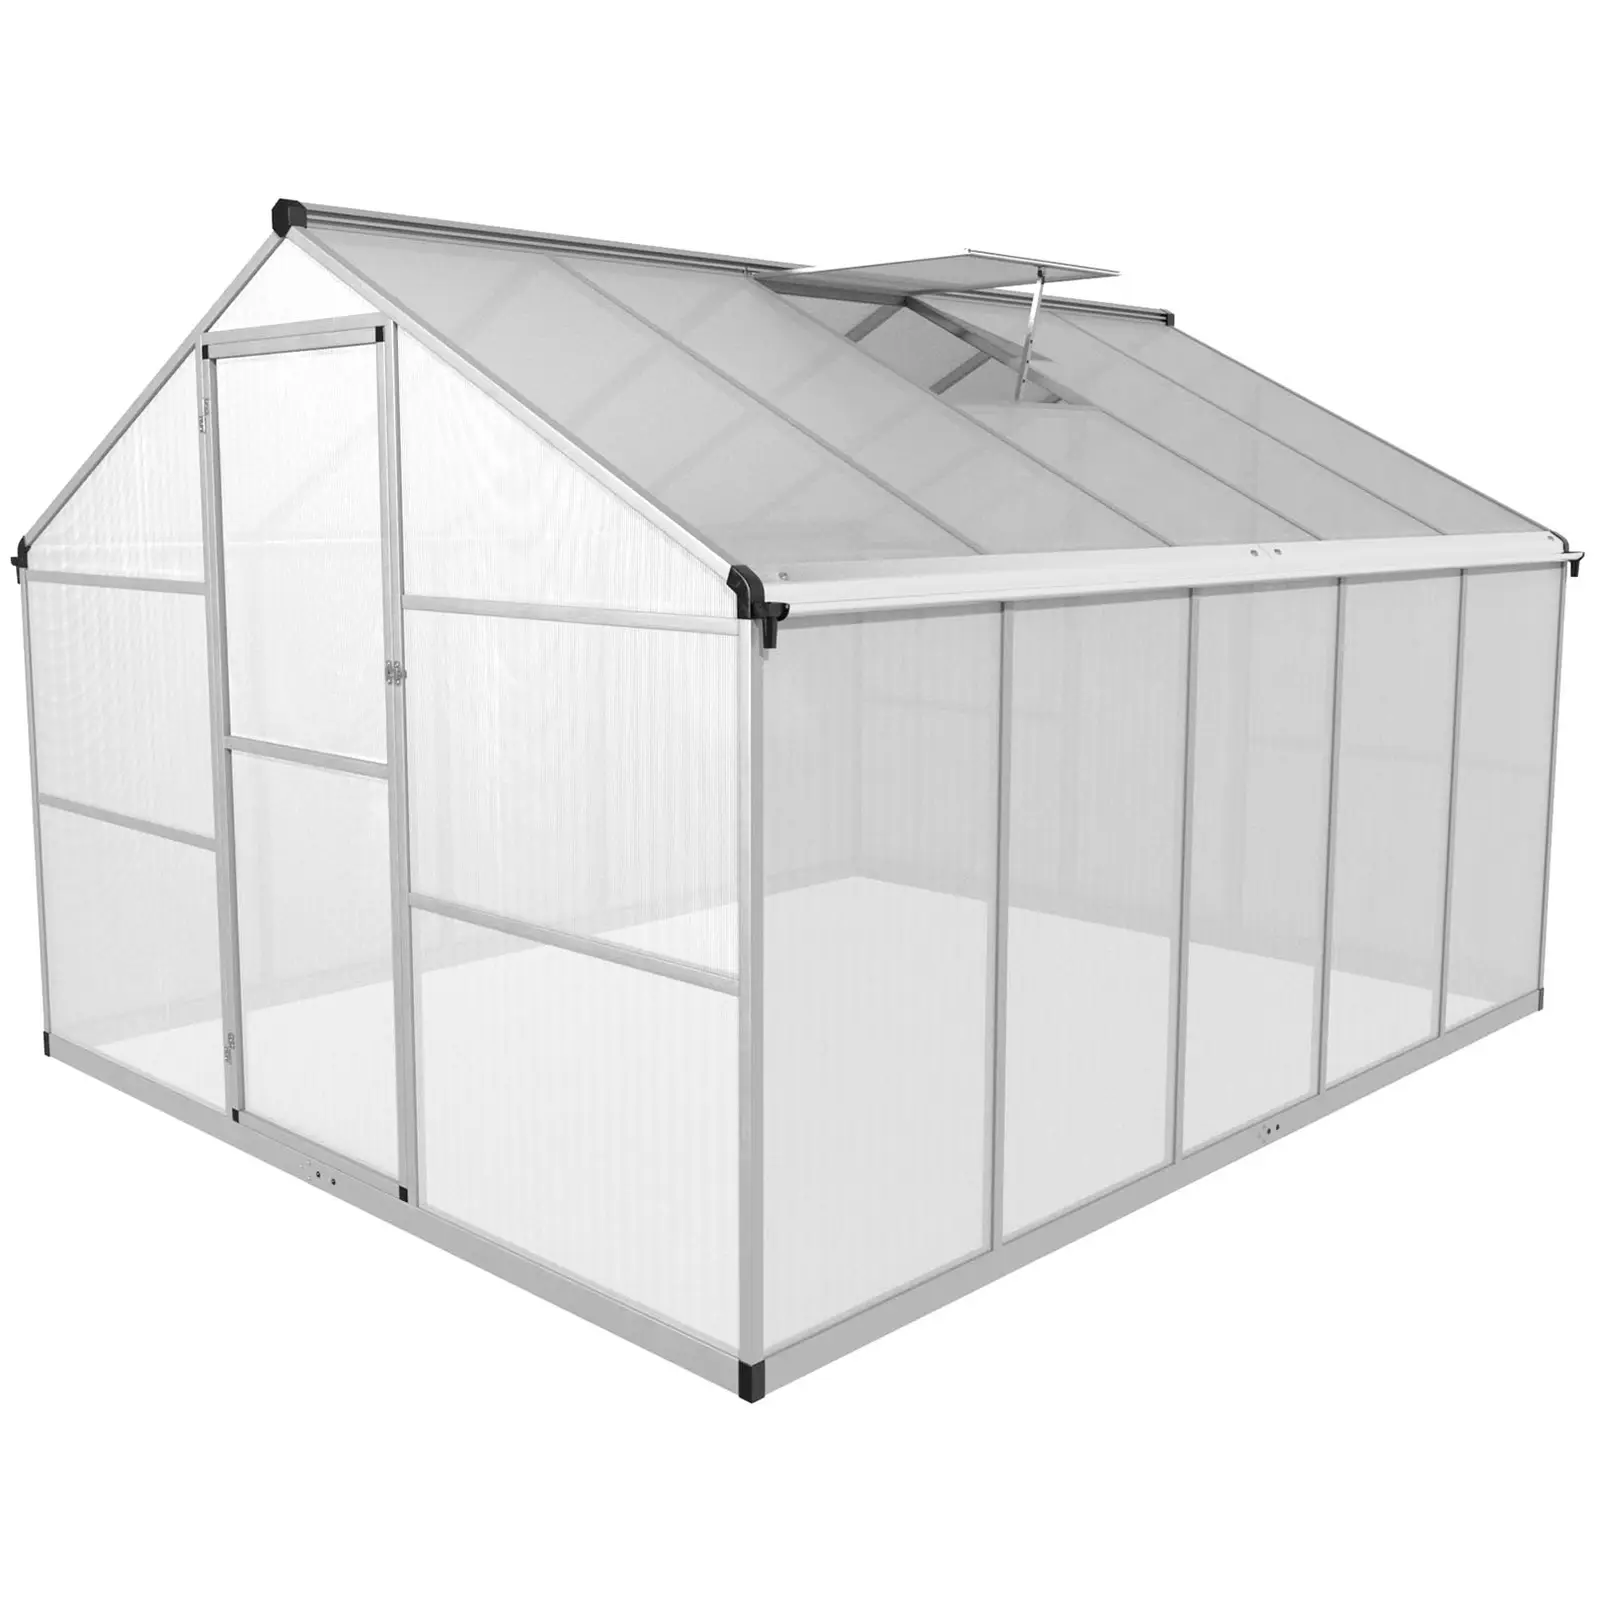 Greenhouse - 301 x 238 x 195 cm - polycarbonate + aluminium